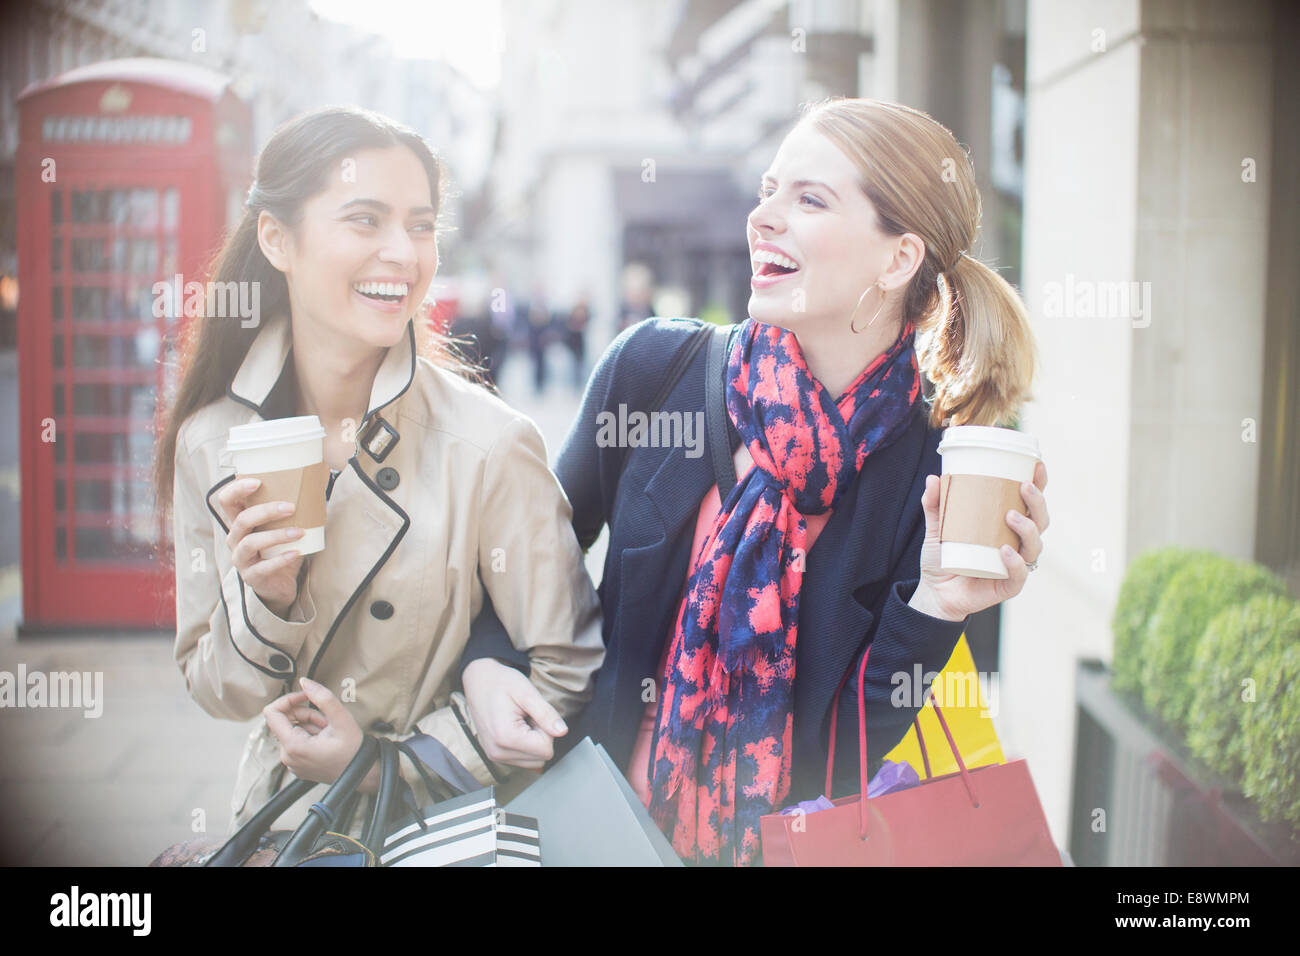 Les femmes de boire du café ensemble on city street Banque D'Images